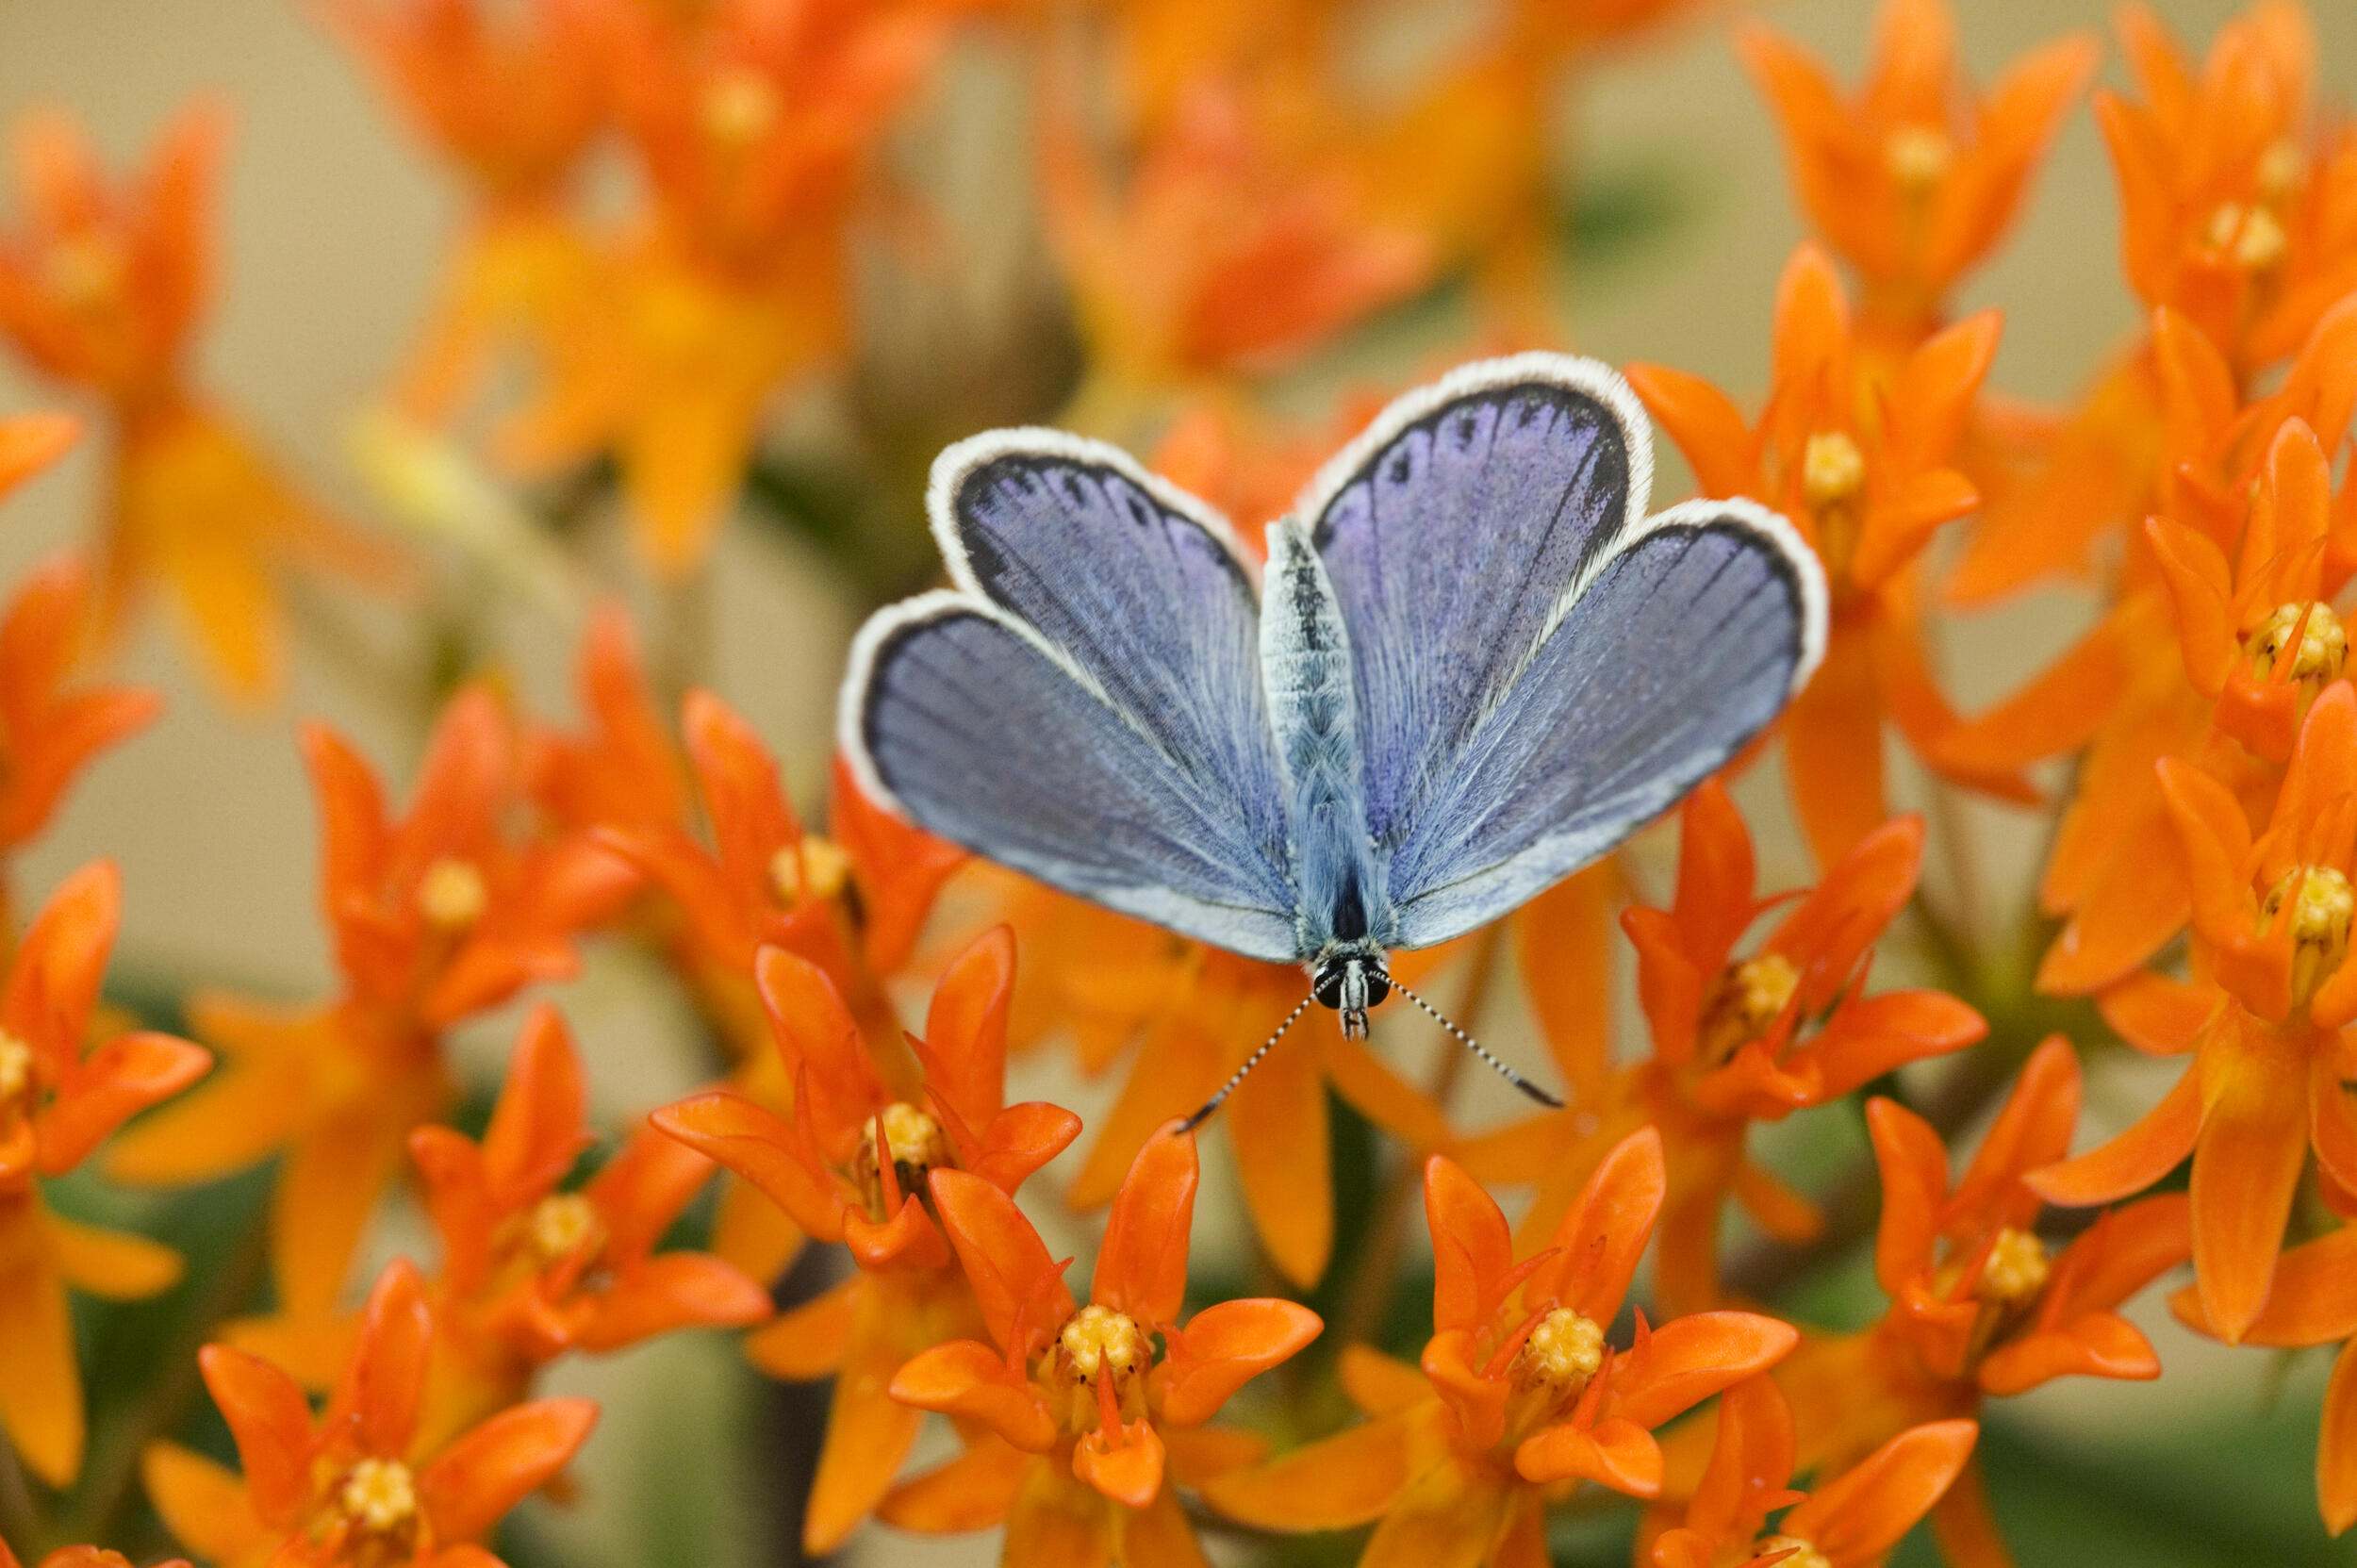 A male Karner blue butterfly on orange flowers. 